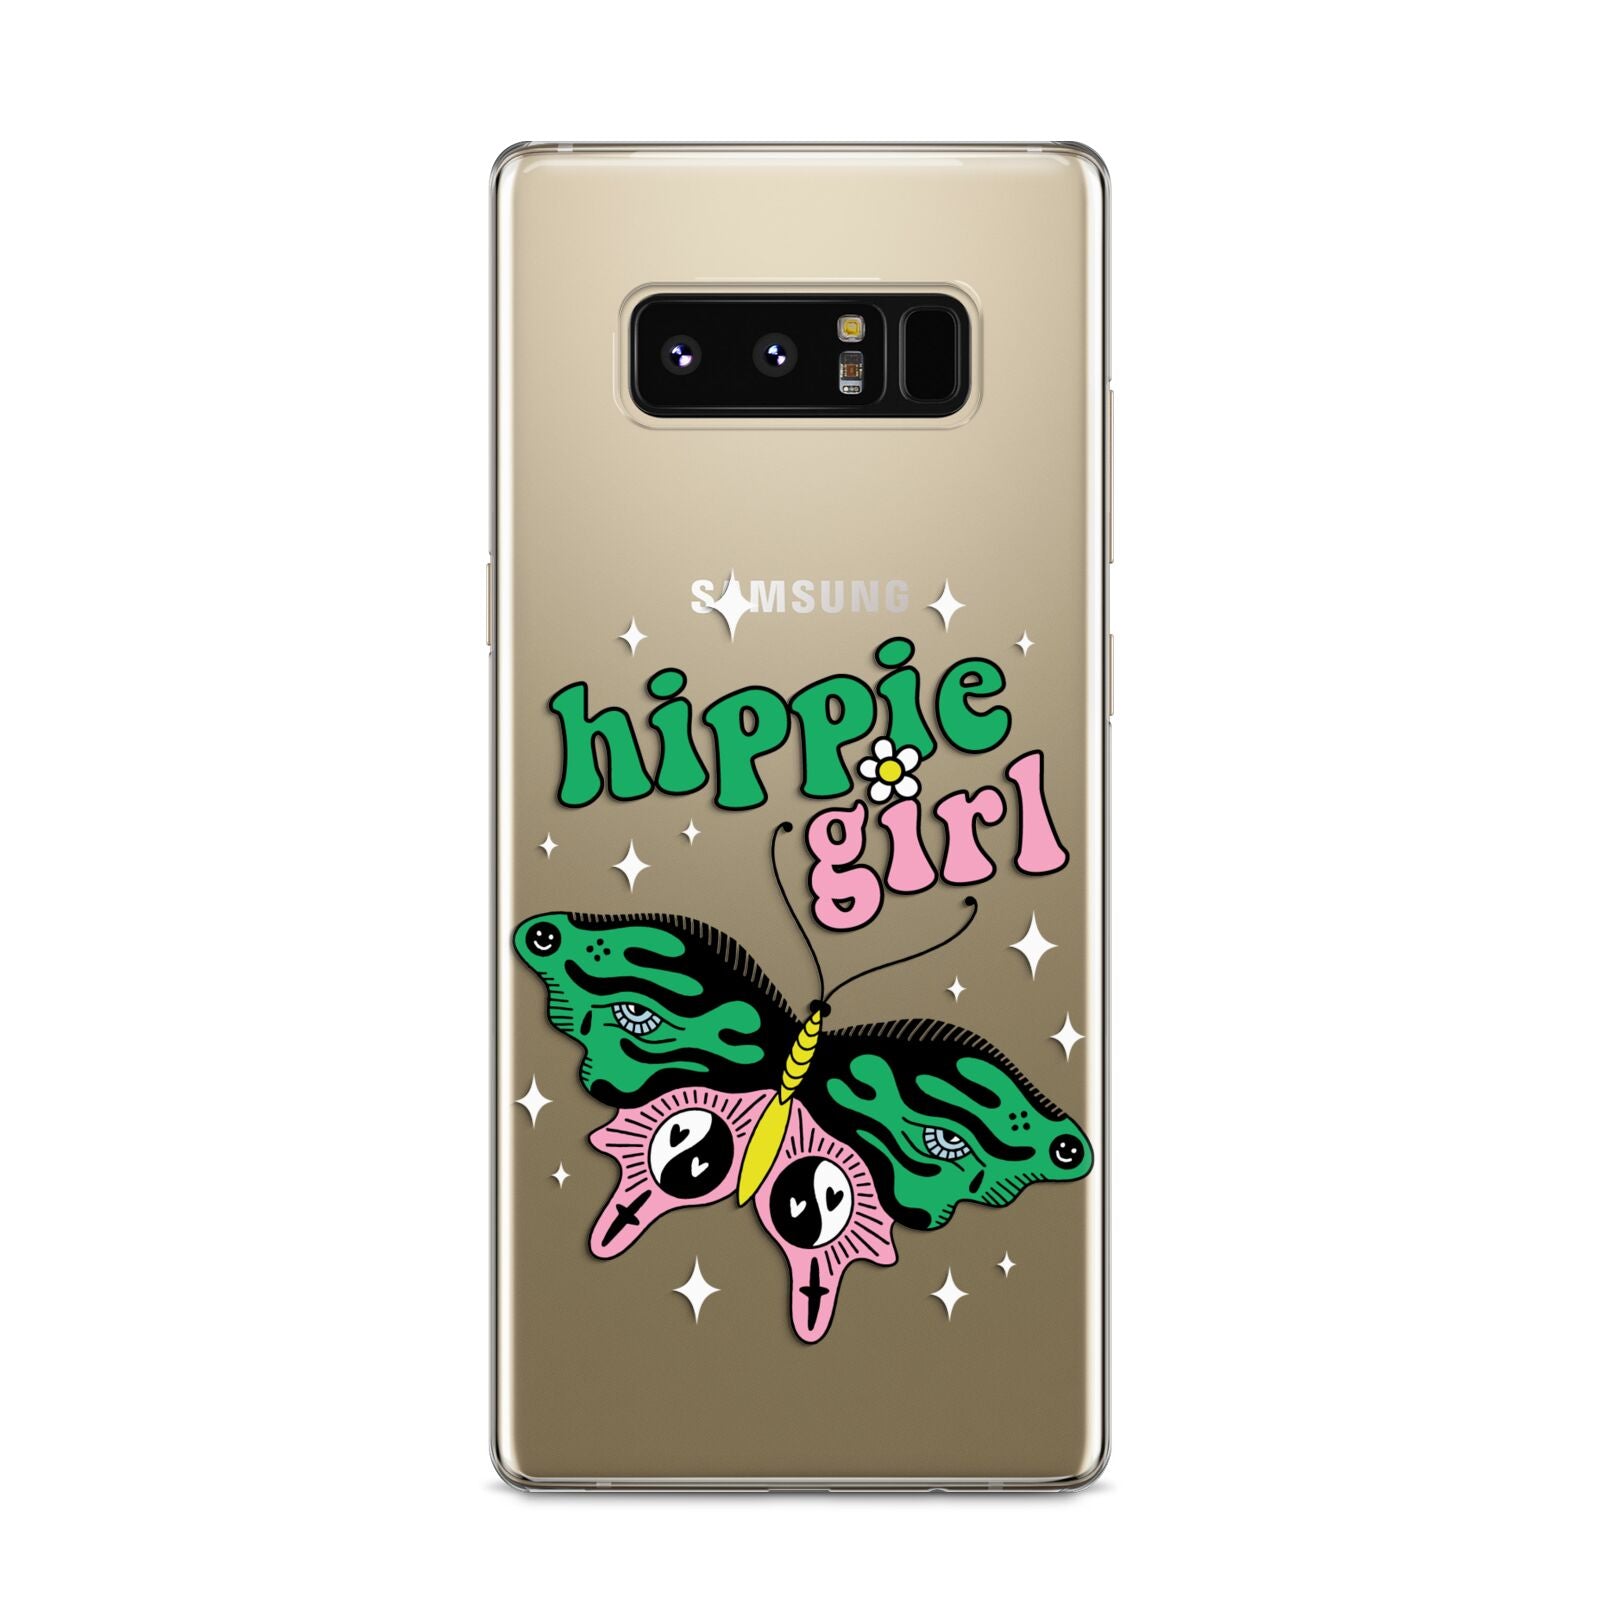 Hippie Girl Samsung Galaxy S8 Case